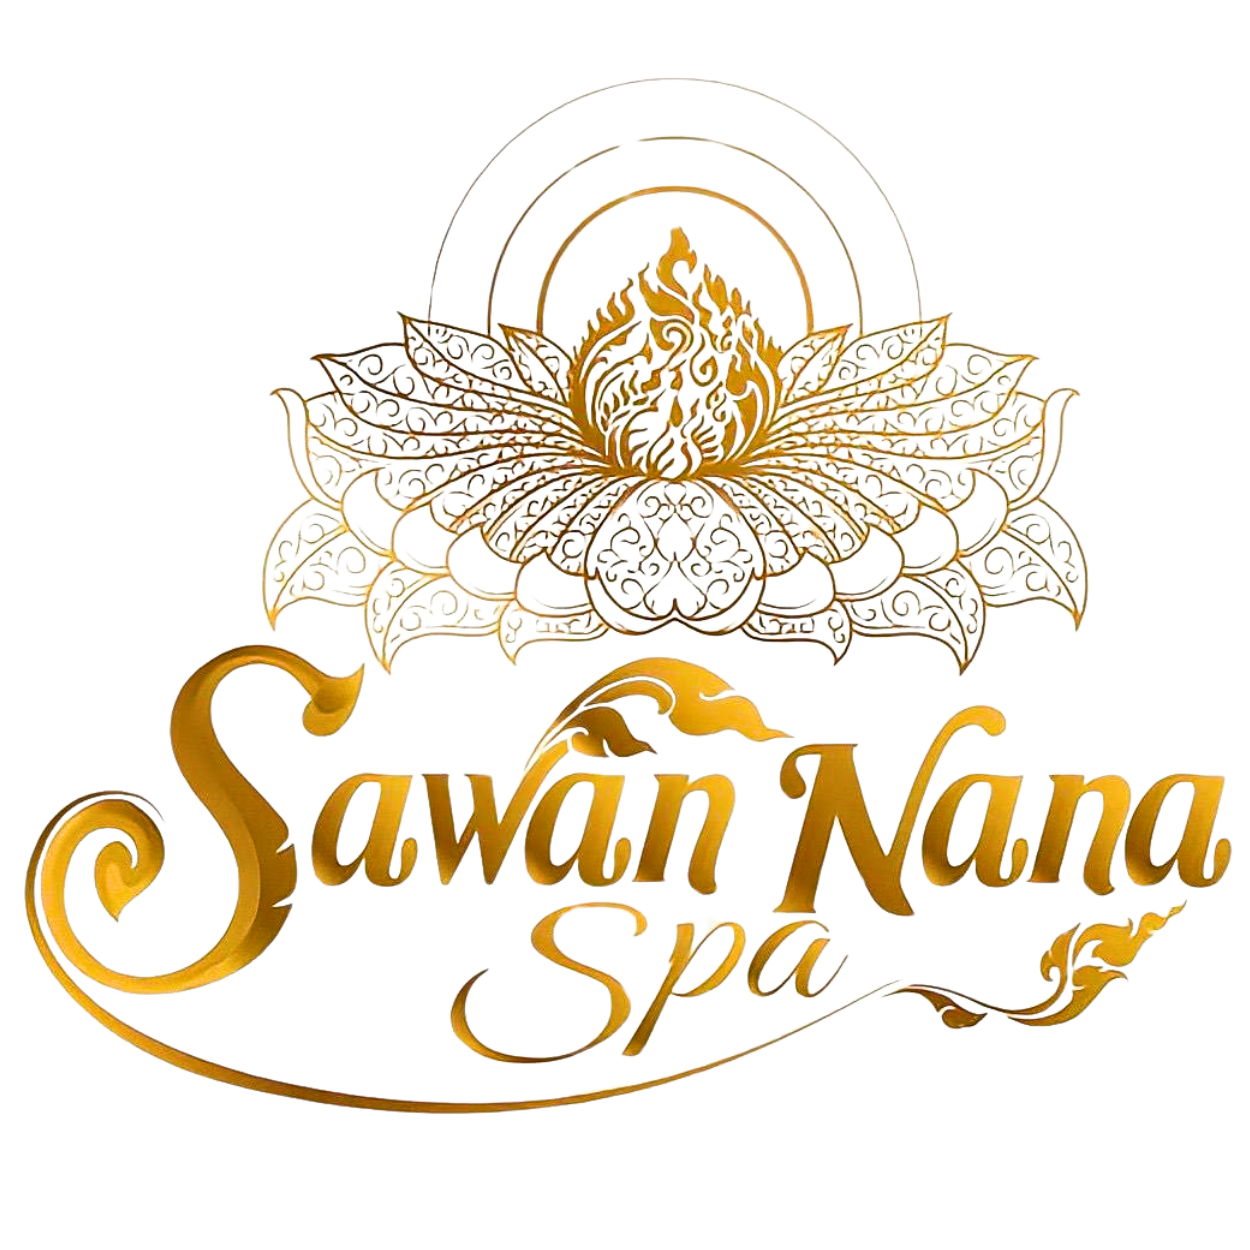 Sawan Nana Spa Leiden